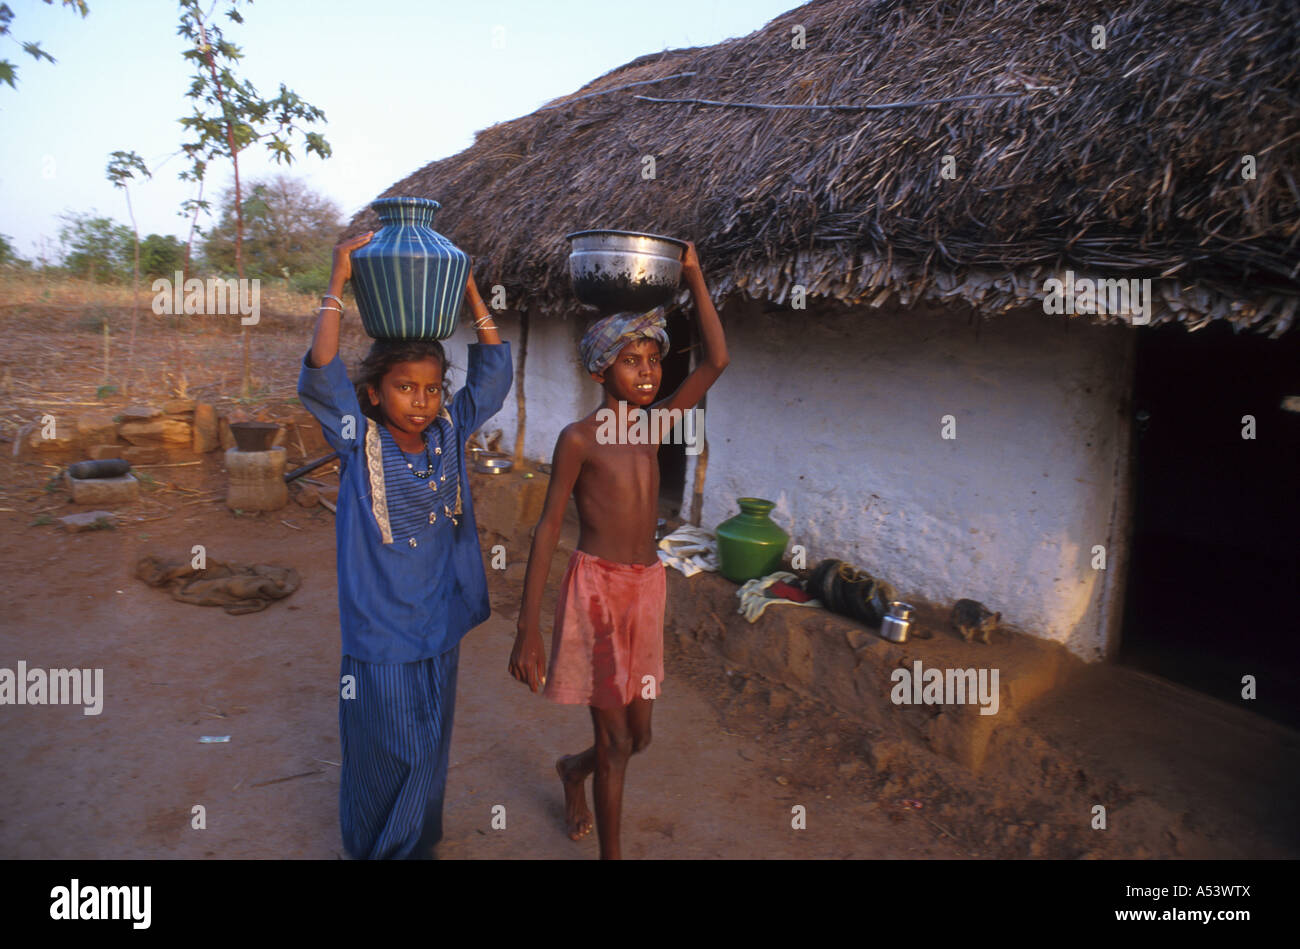 Painet ha2232 5018 Indien Kinder Arbeit tragen Wasser Land entwickeln Nation wirtschaftlich entwickelten Kultur Schwellen- Stockfoto